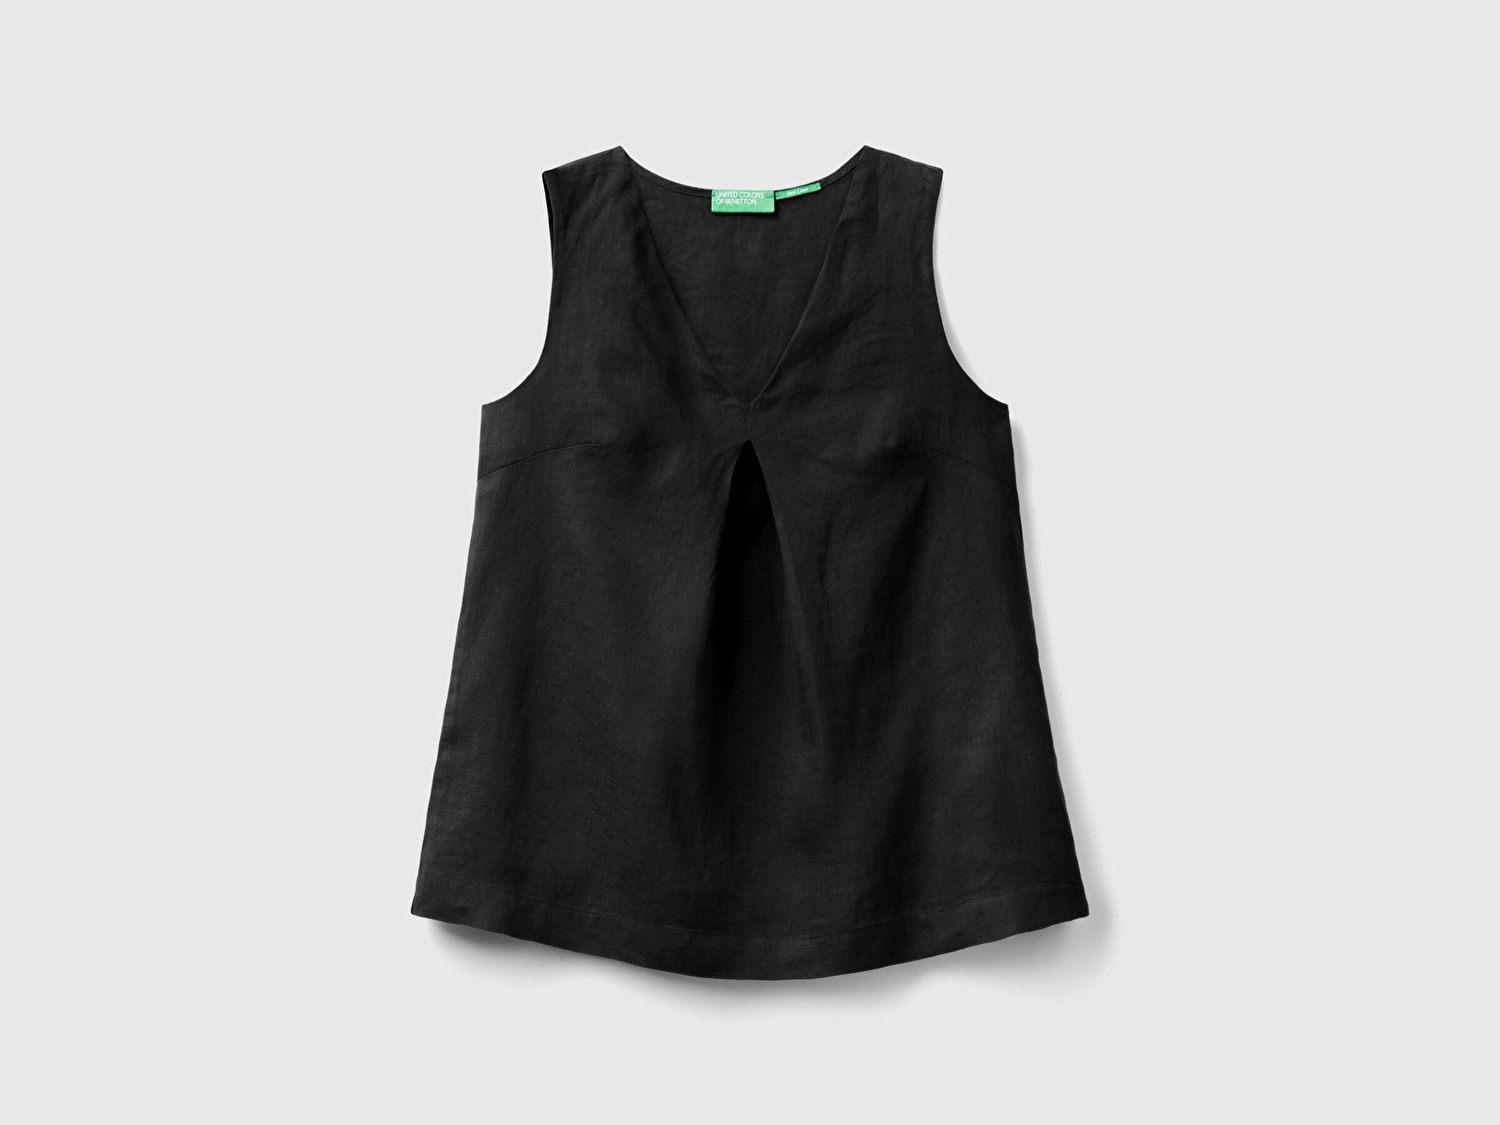 Benetton Kadın Siyah %100 Keten V Yaka Kolsuz Geniş Kesim Bluz